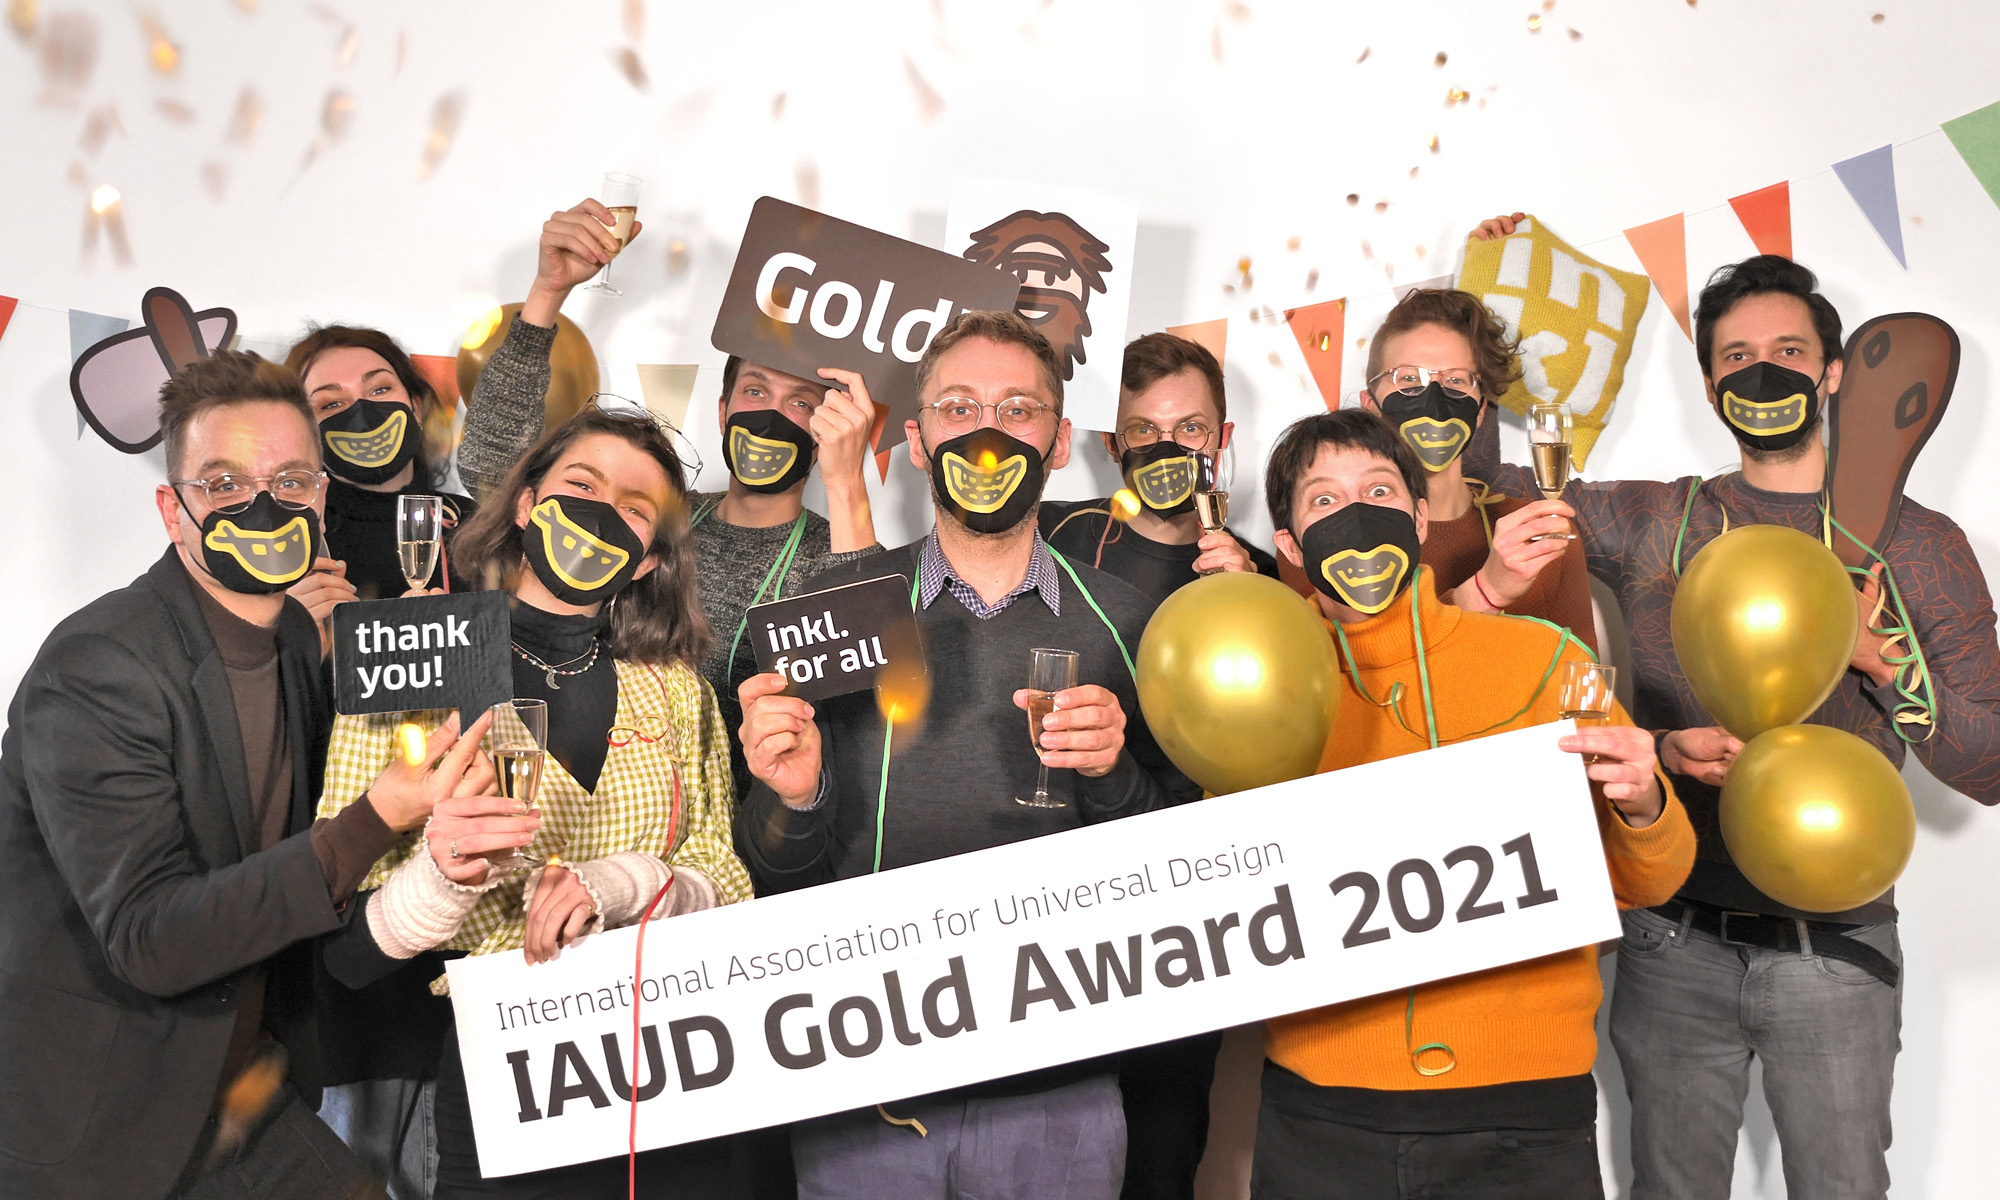 inkl-Mitarbeiterinnen und Mitarbeiter stehen Maske-tragend in Gruppe zusammen und freuen sich. Sie haben Sektgläser, Luftballons in der Hand, sind mit Girlanden behangen, von oben fällt Konfetti. Zwei Kolleginnen in der ersten Reihe halten ein großes Banner. Auf ihm steht: International Association for Universal Design, IAUD Gold Award 2021.